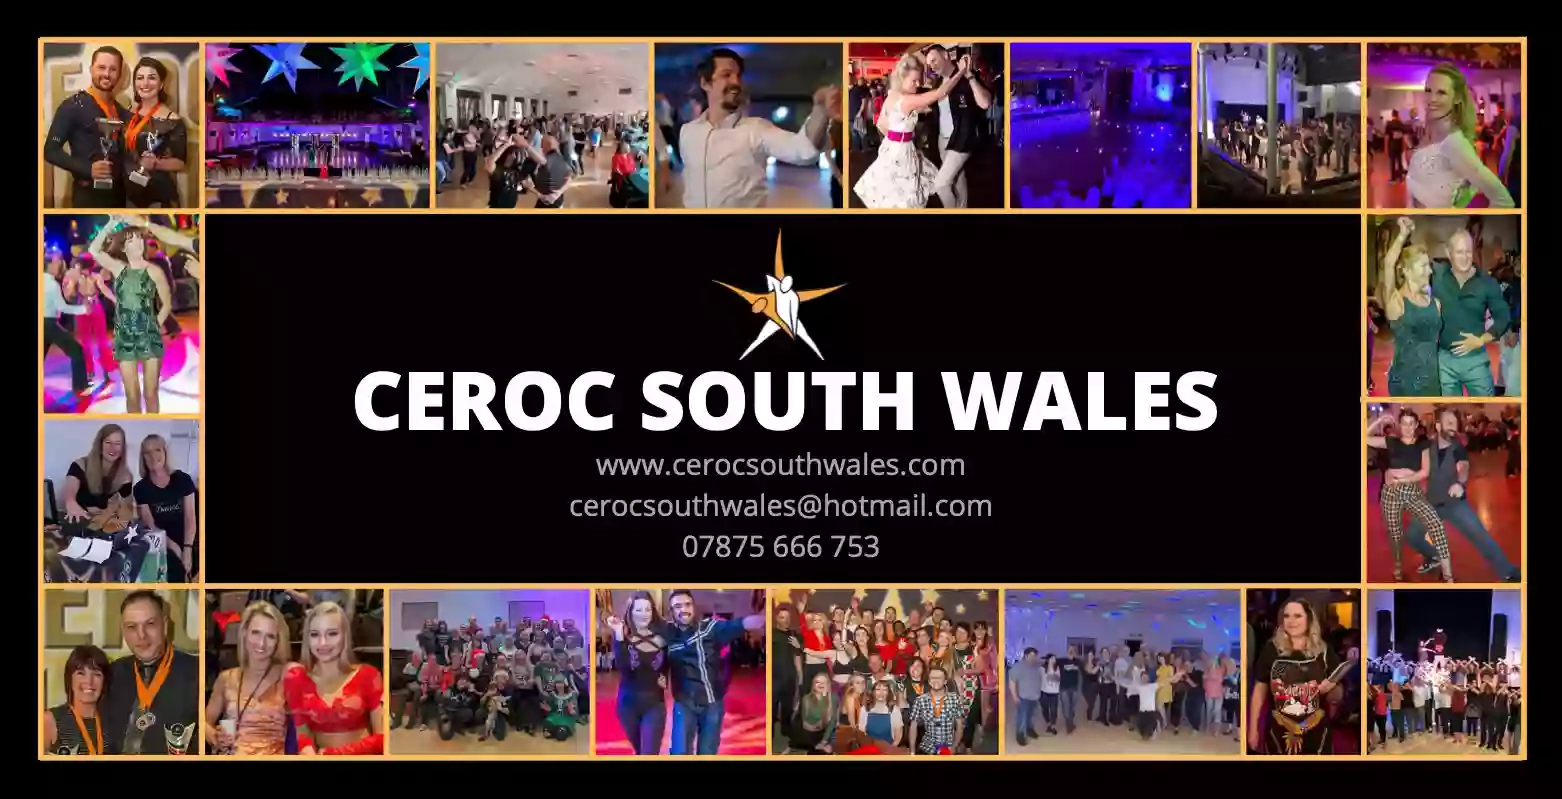 Ceroc South Wales